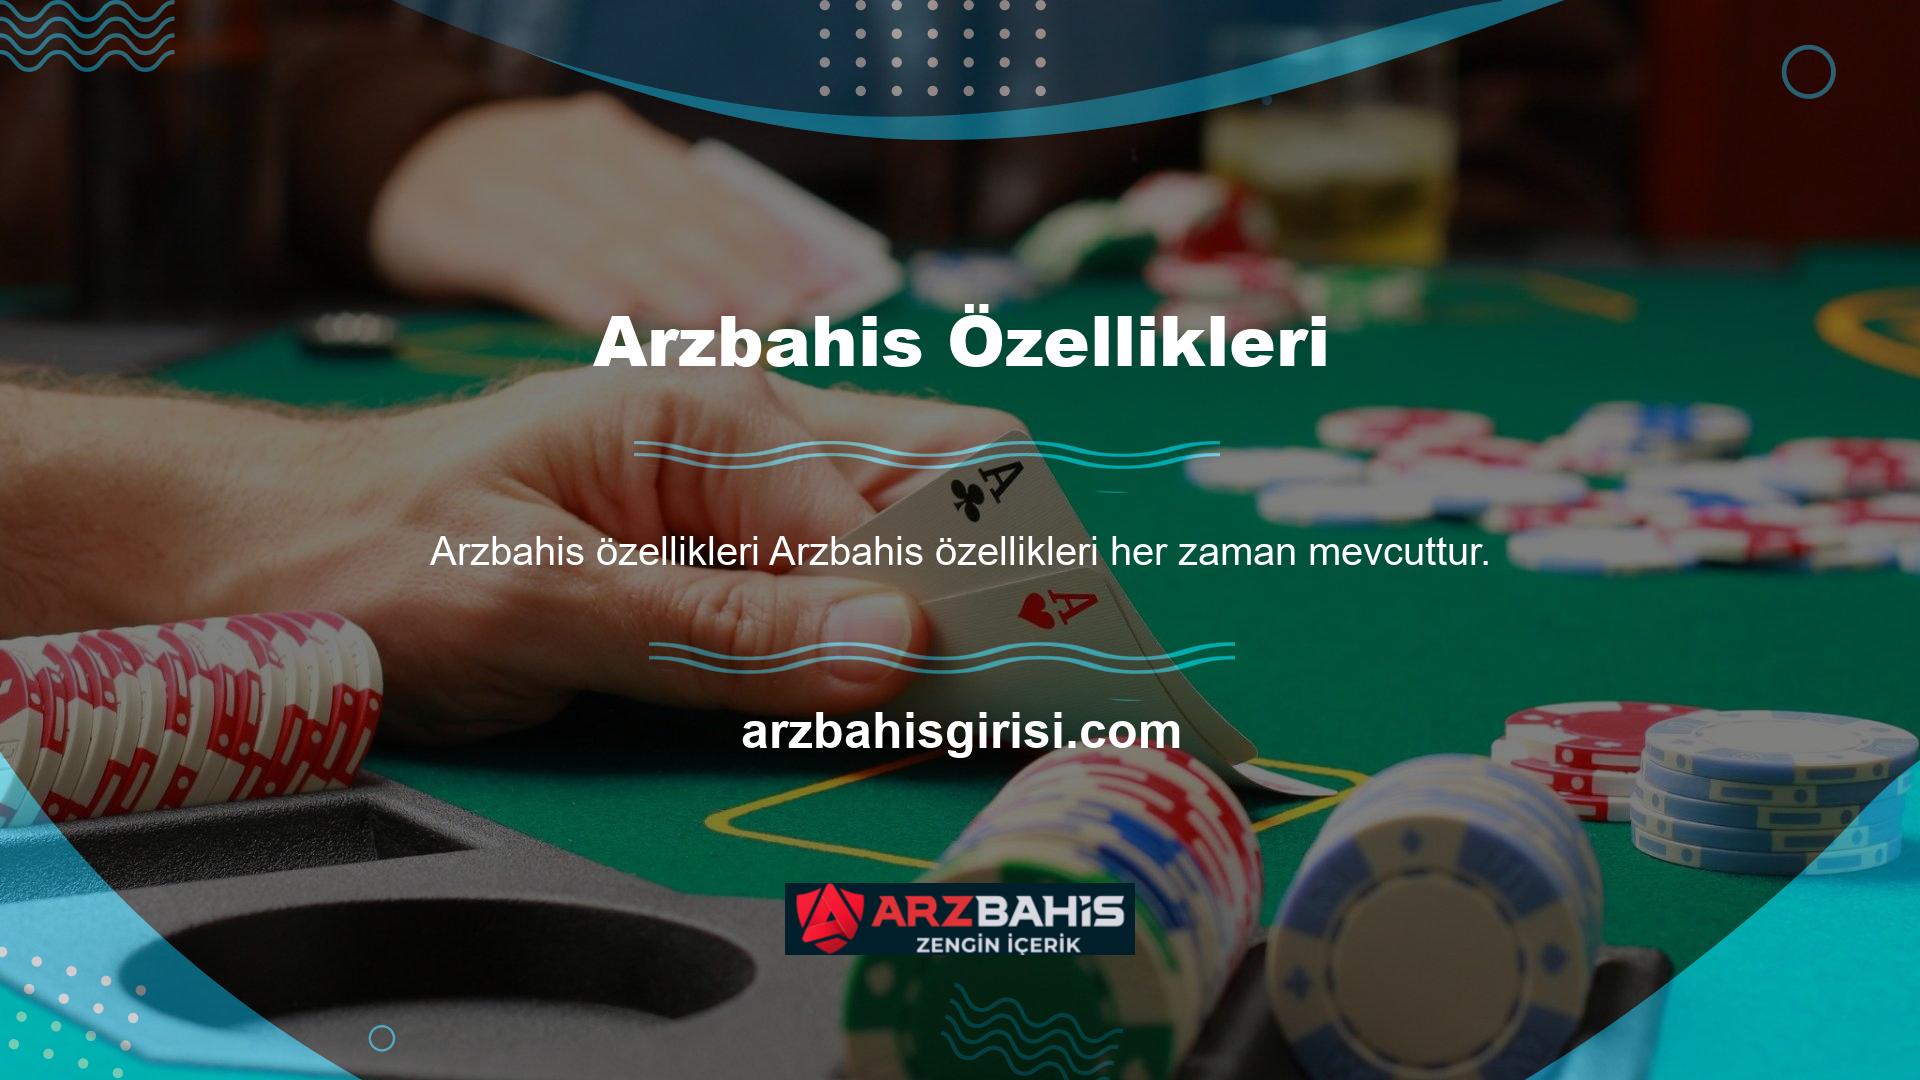 Bu bağlamda Arzbahis web sitesi spor tutkunlarına benzeri görülmemiş faydalar sunmaktadır